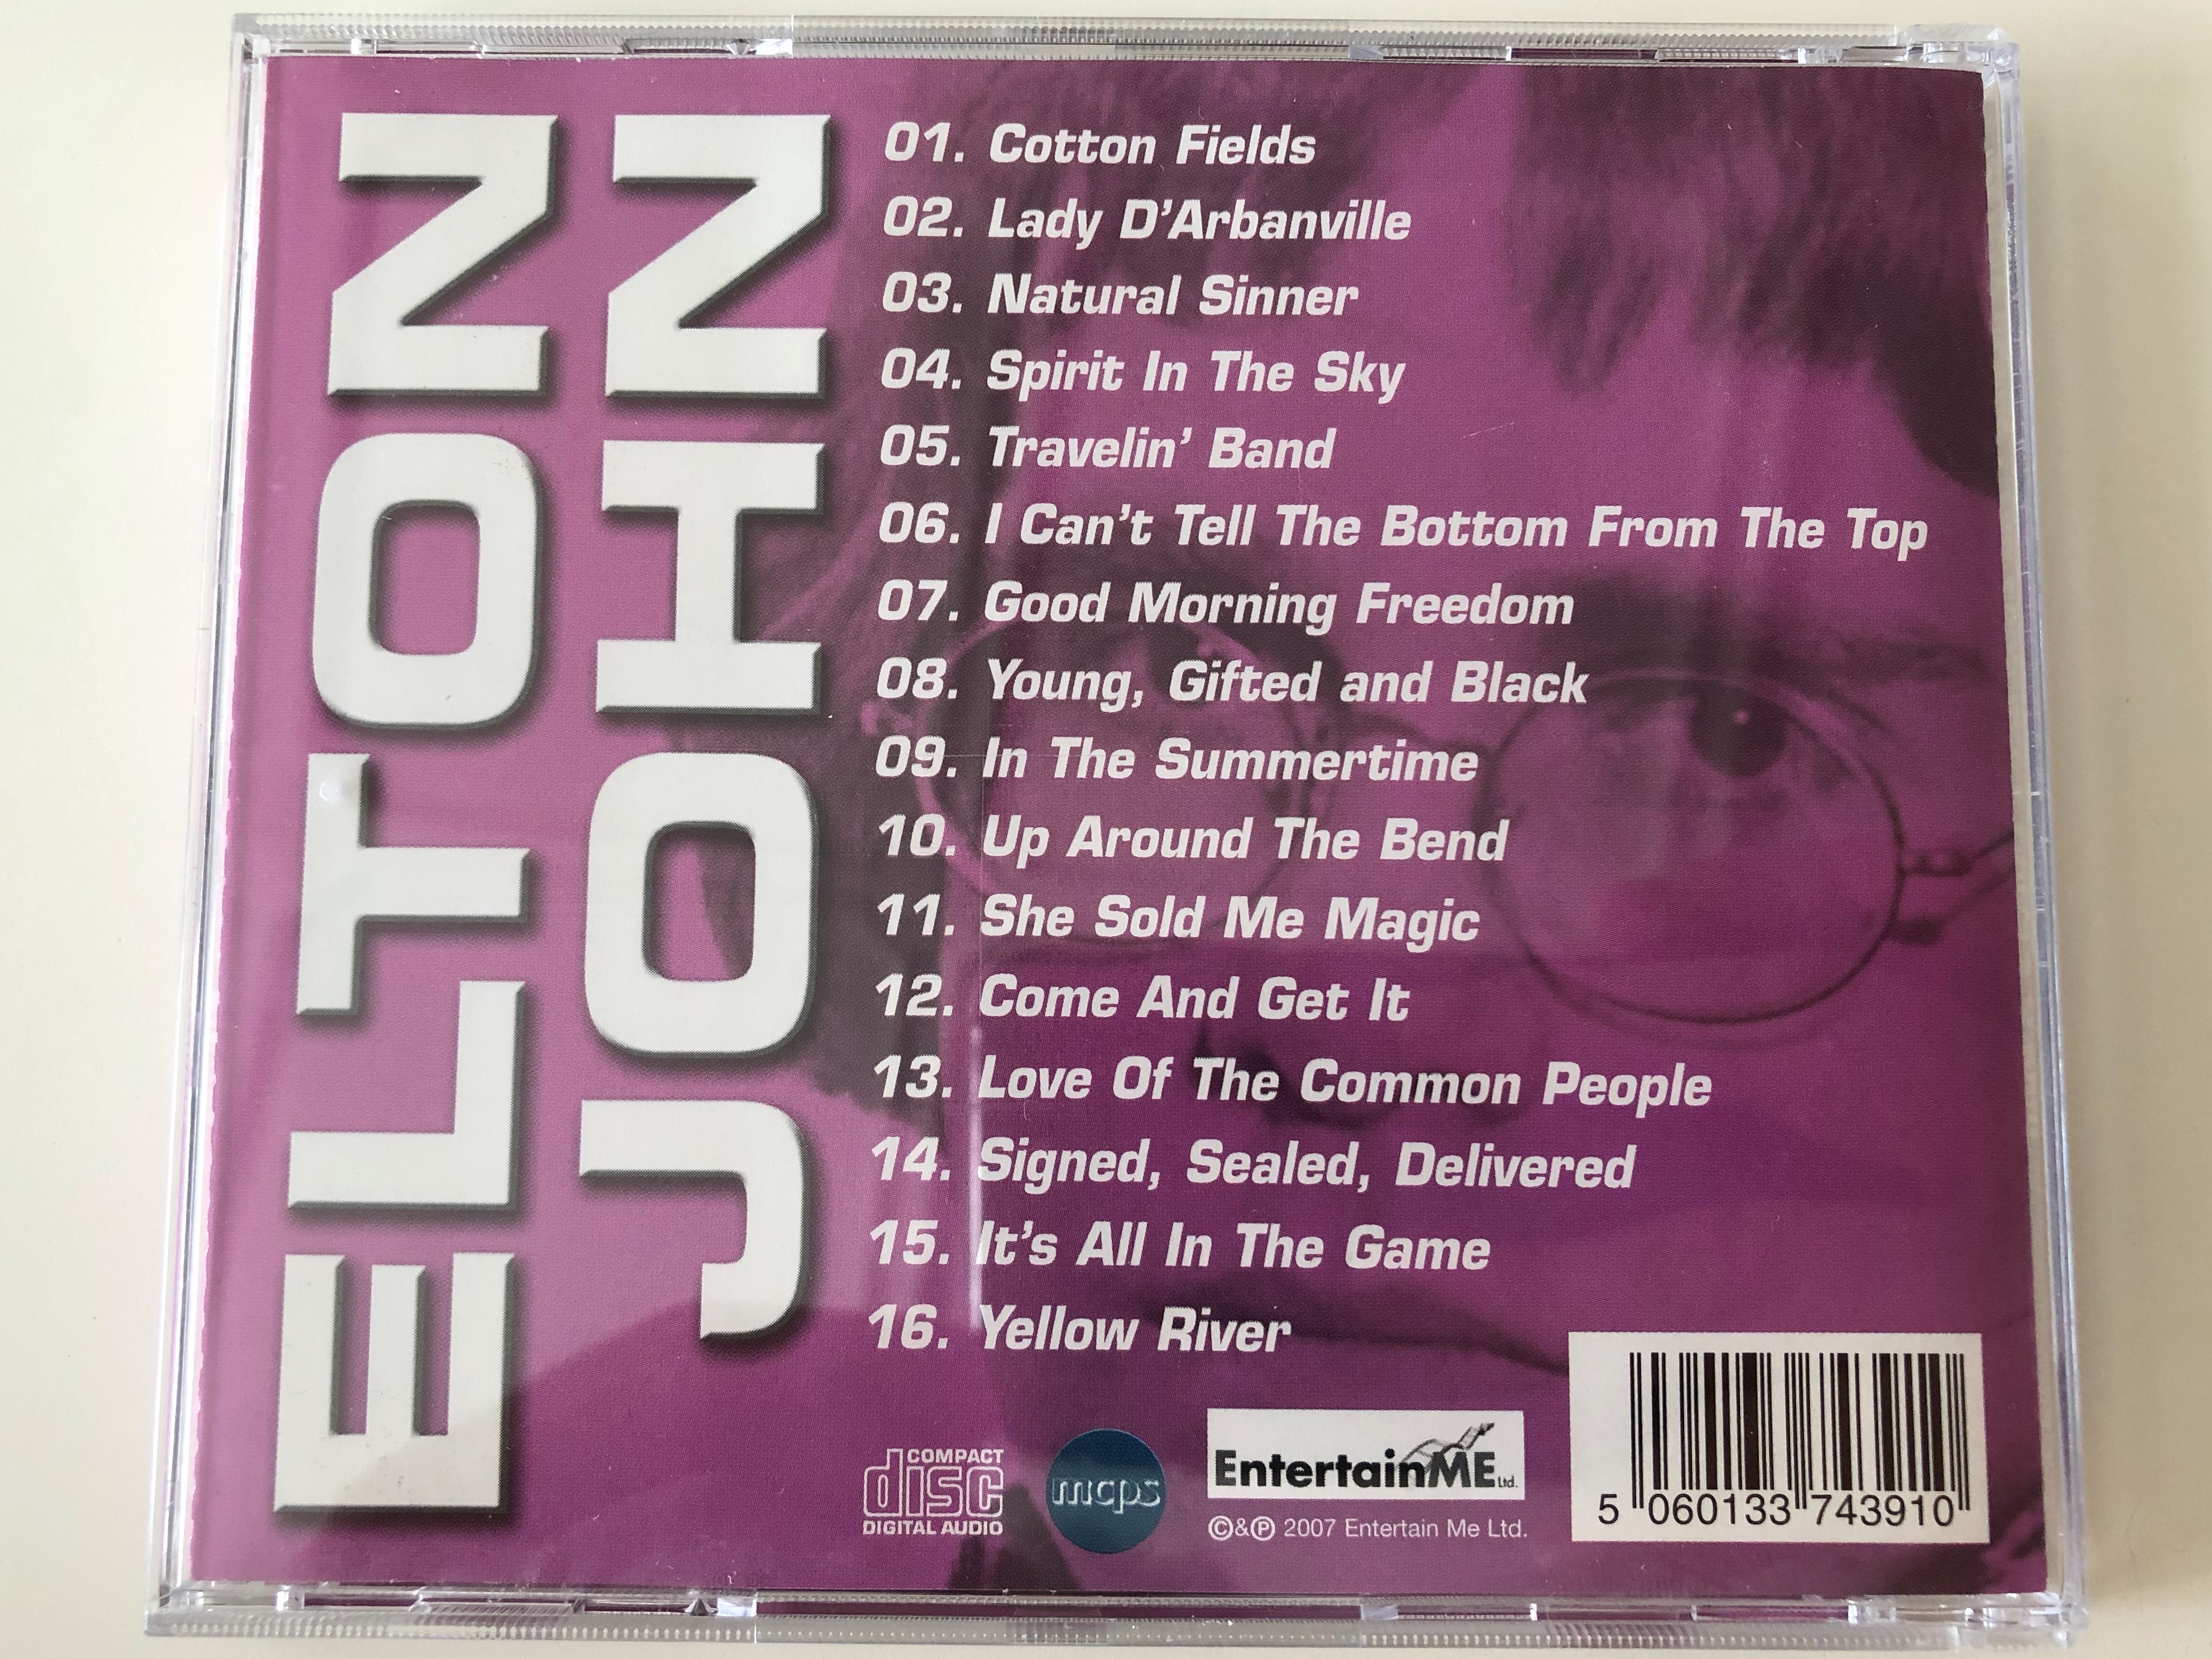 elton-john-the-legendary-covers-album-entertain-me-ltd.-audio-cd-2007-74391-5-.jpg